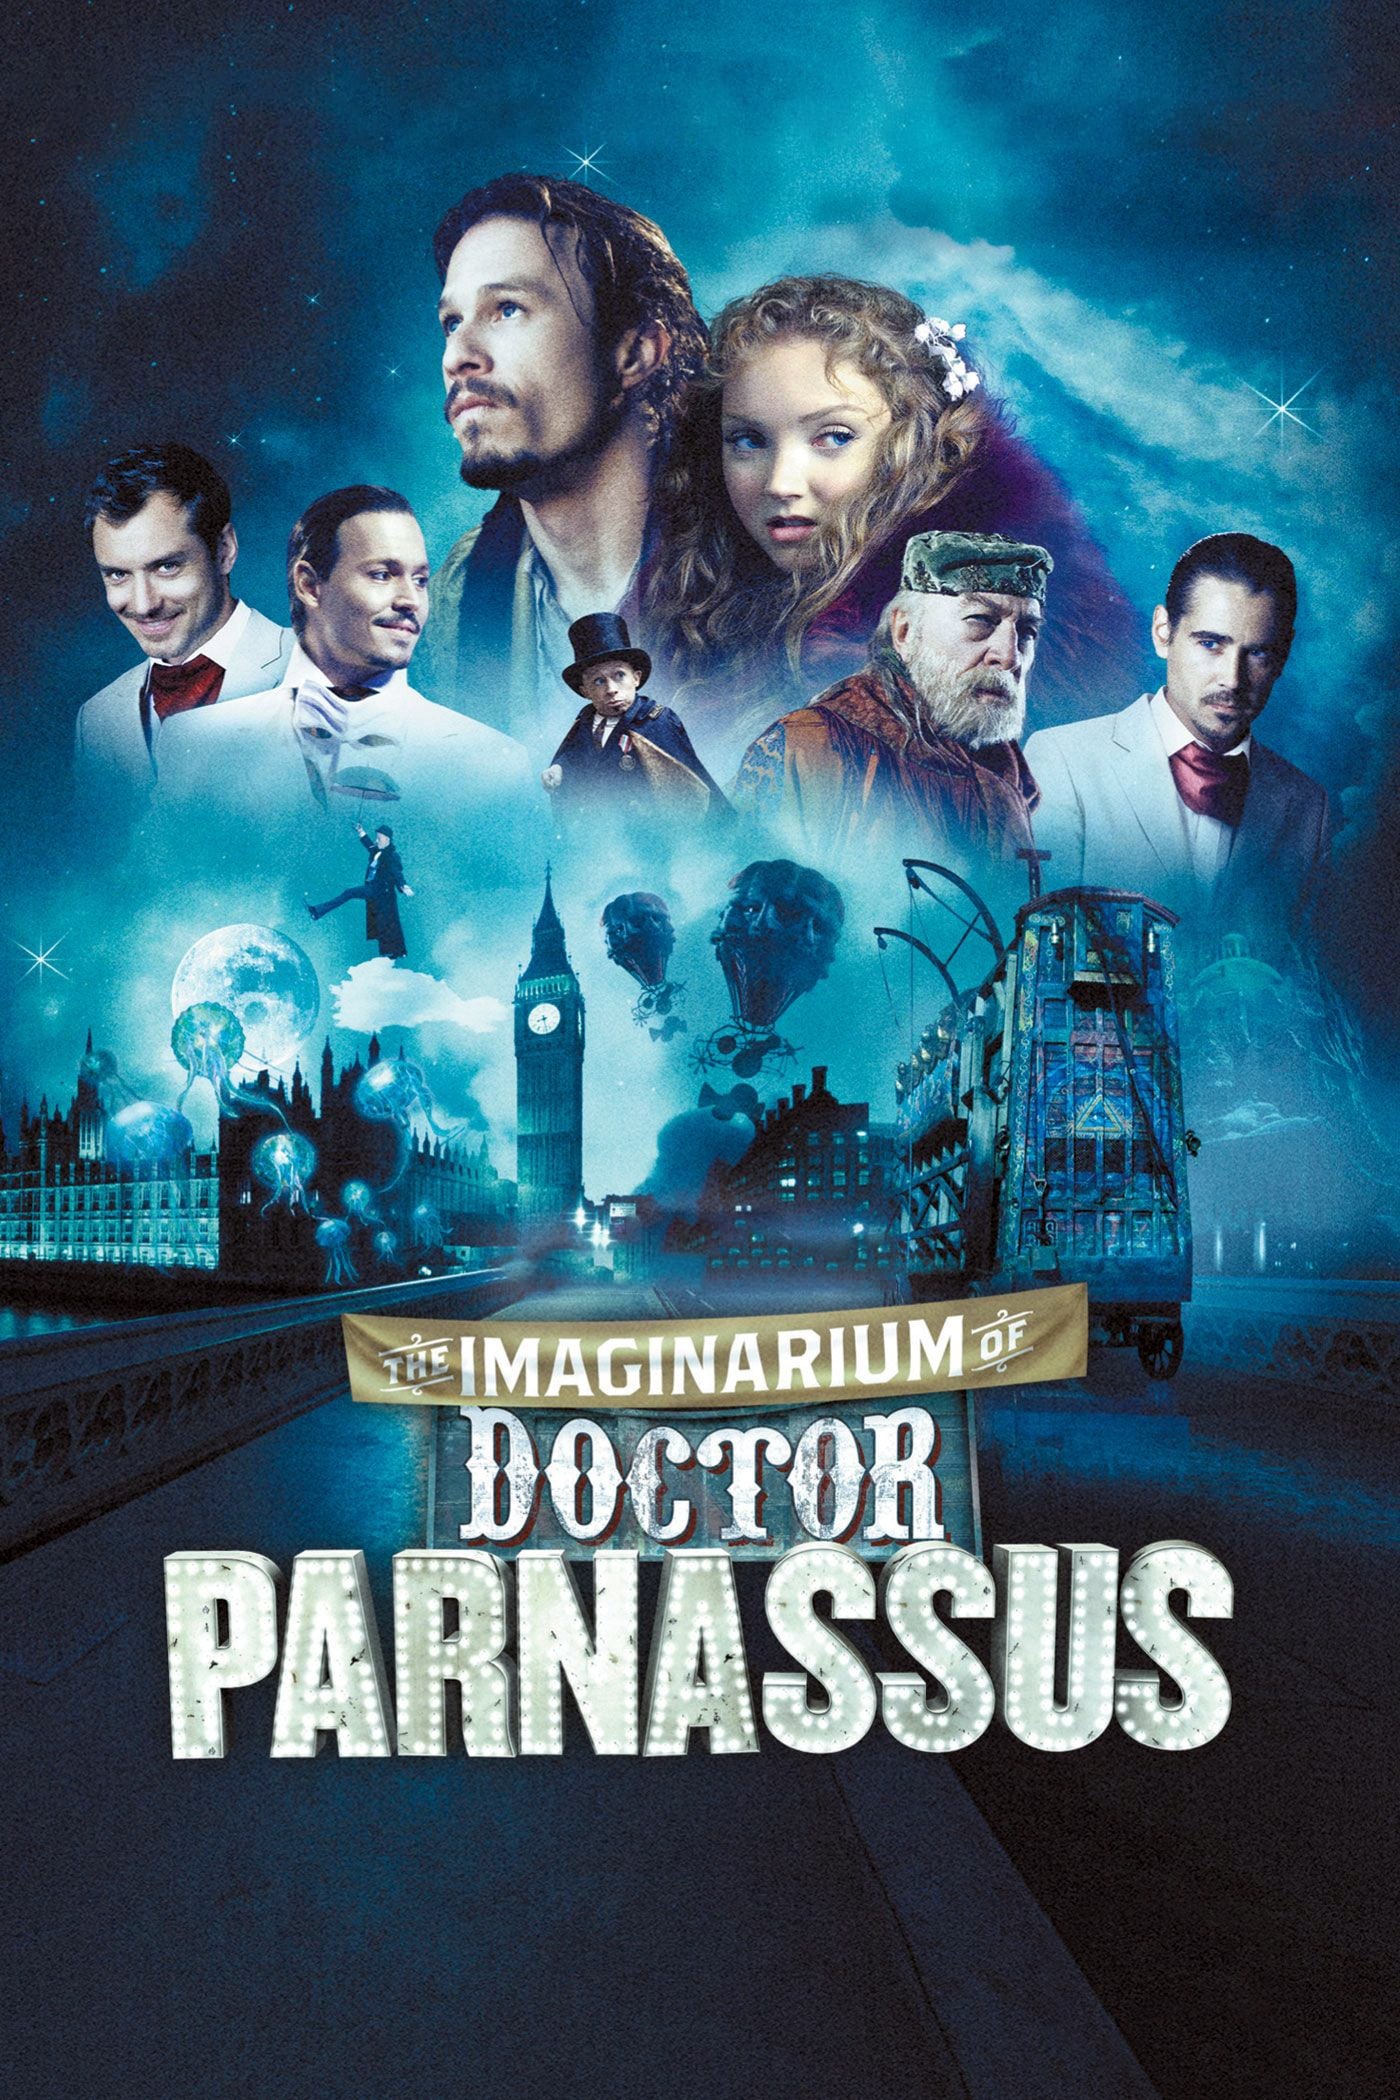 Dr Parnassus